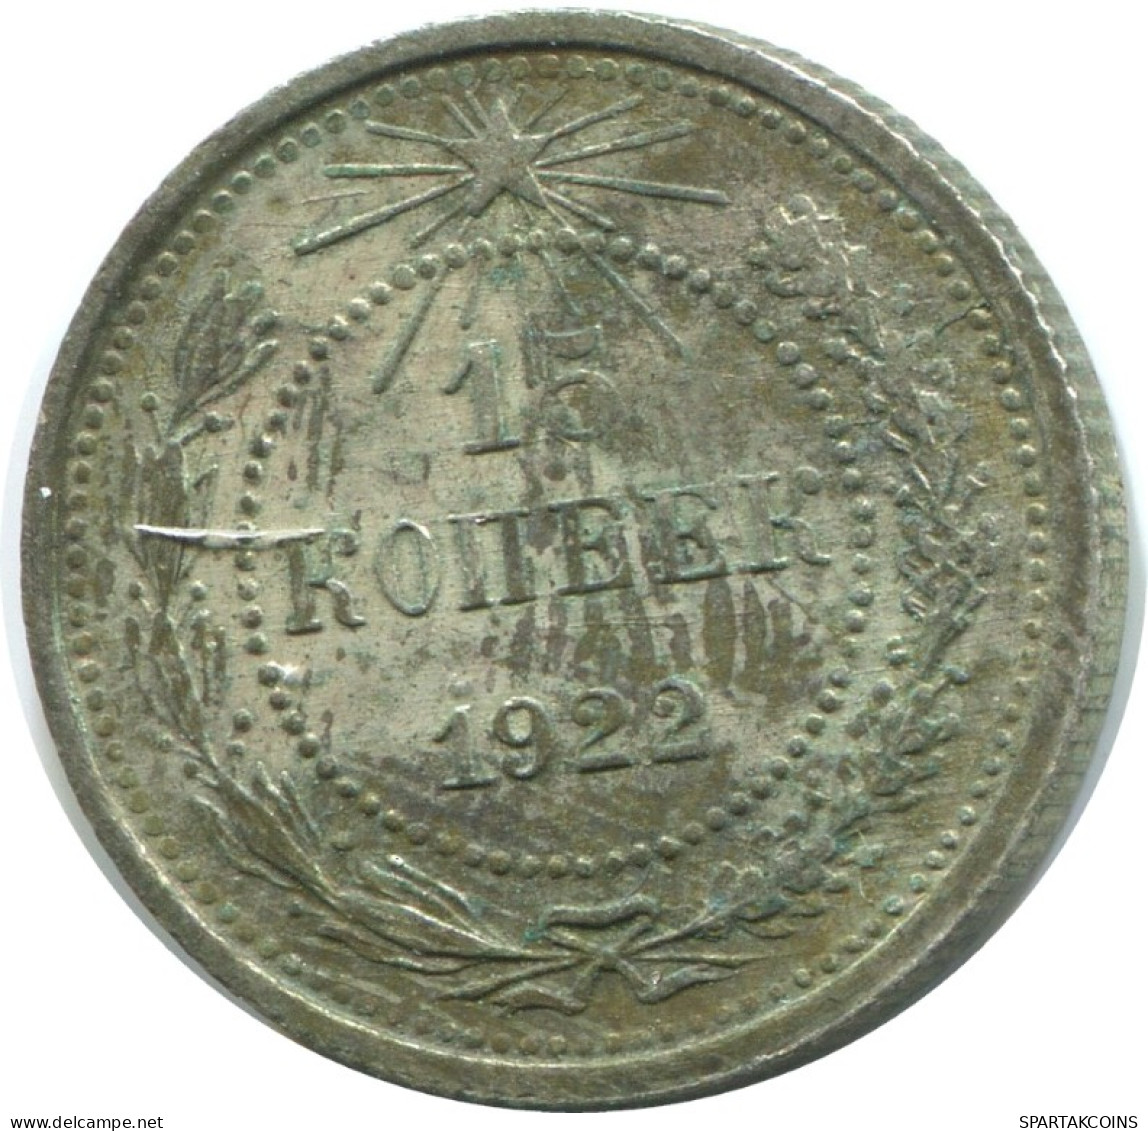 15 KOPEKS 1922 RUSSIA RSFSR SILVER Coin HIGH GRADE #AF224.4.U.A - Rusland